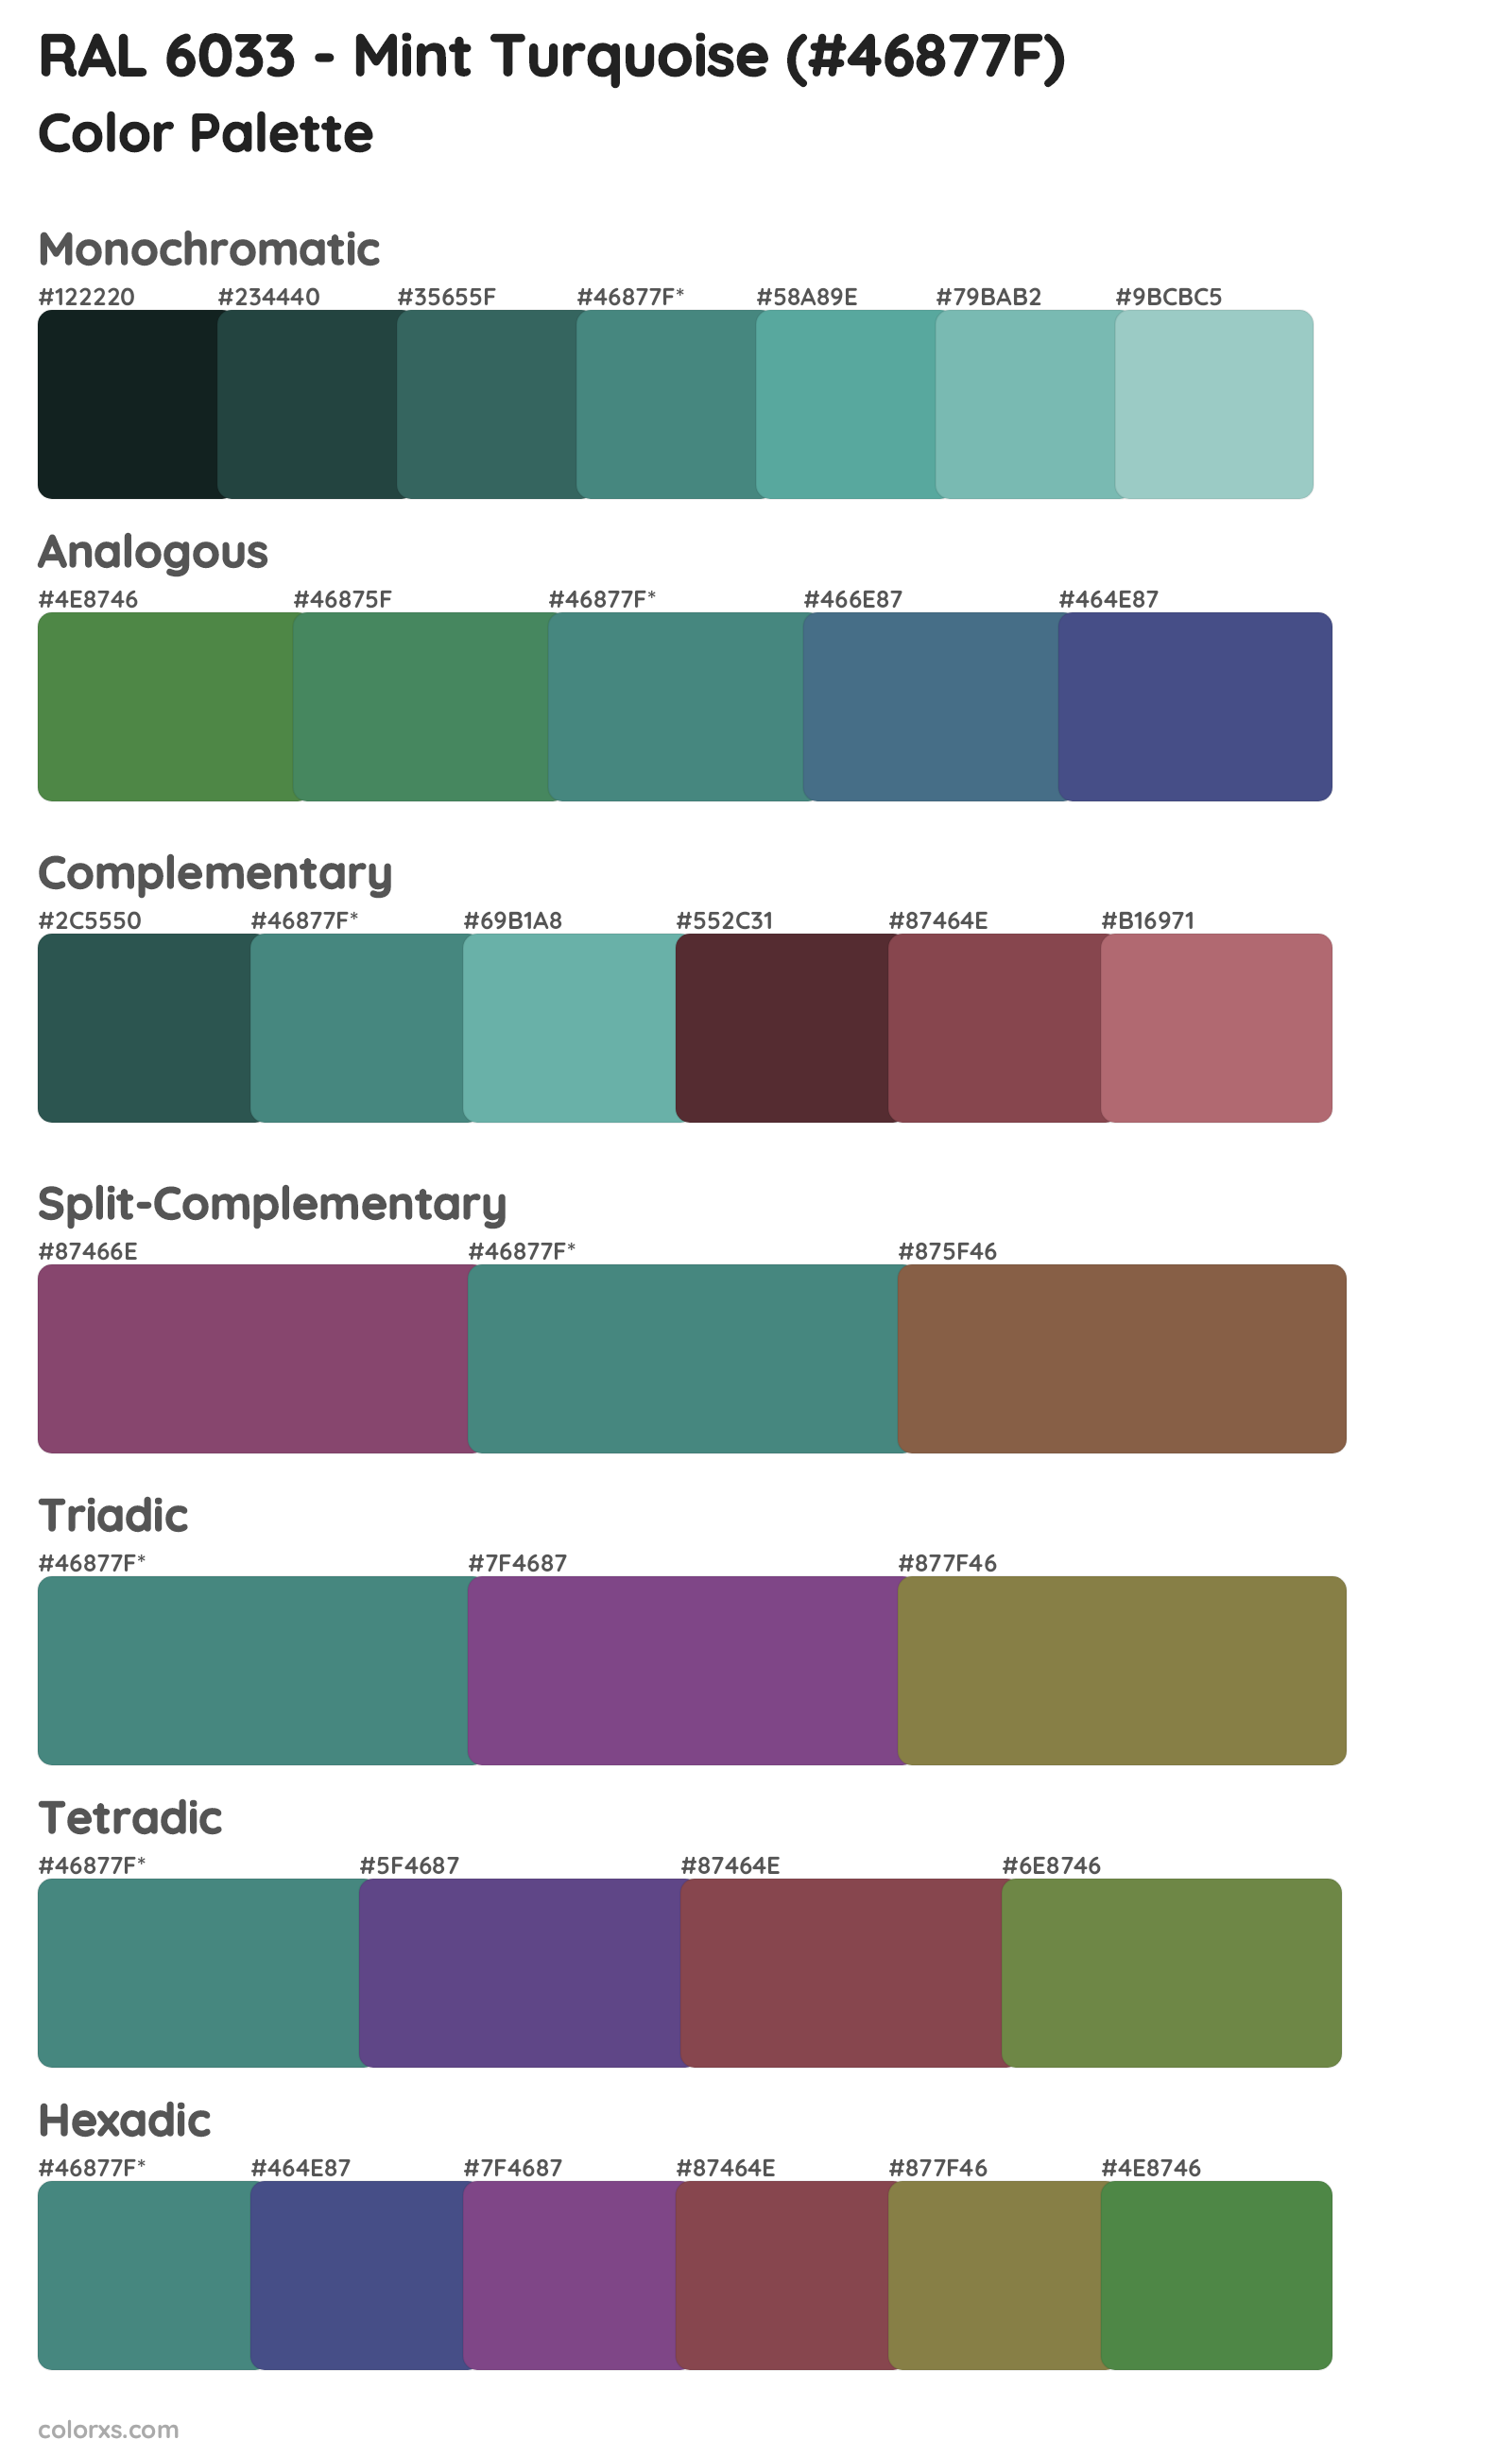 RAL 6033 - Mint Turquoise Color Scheme Palettes